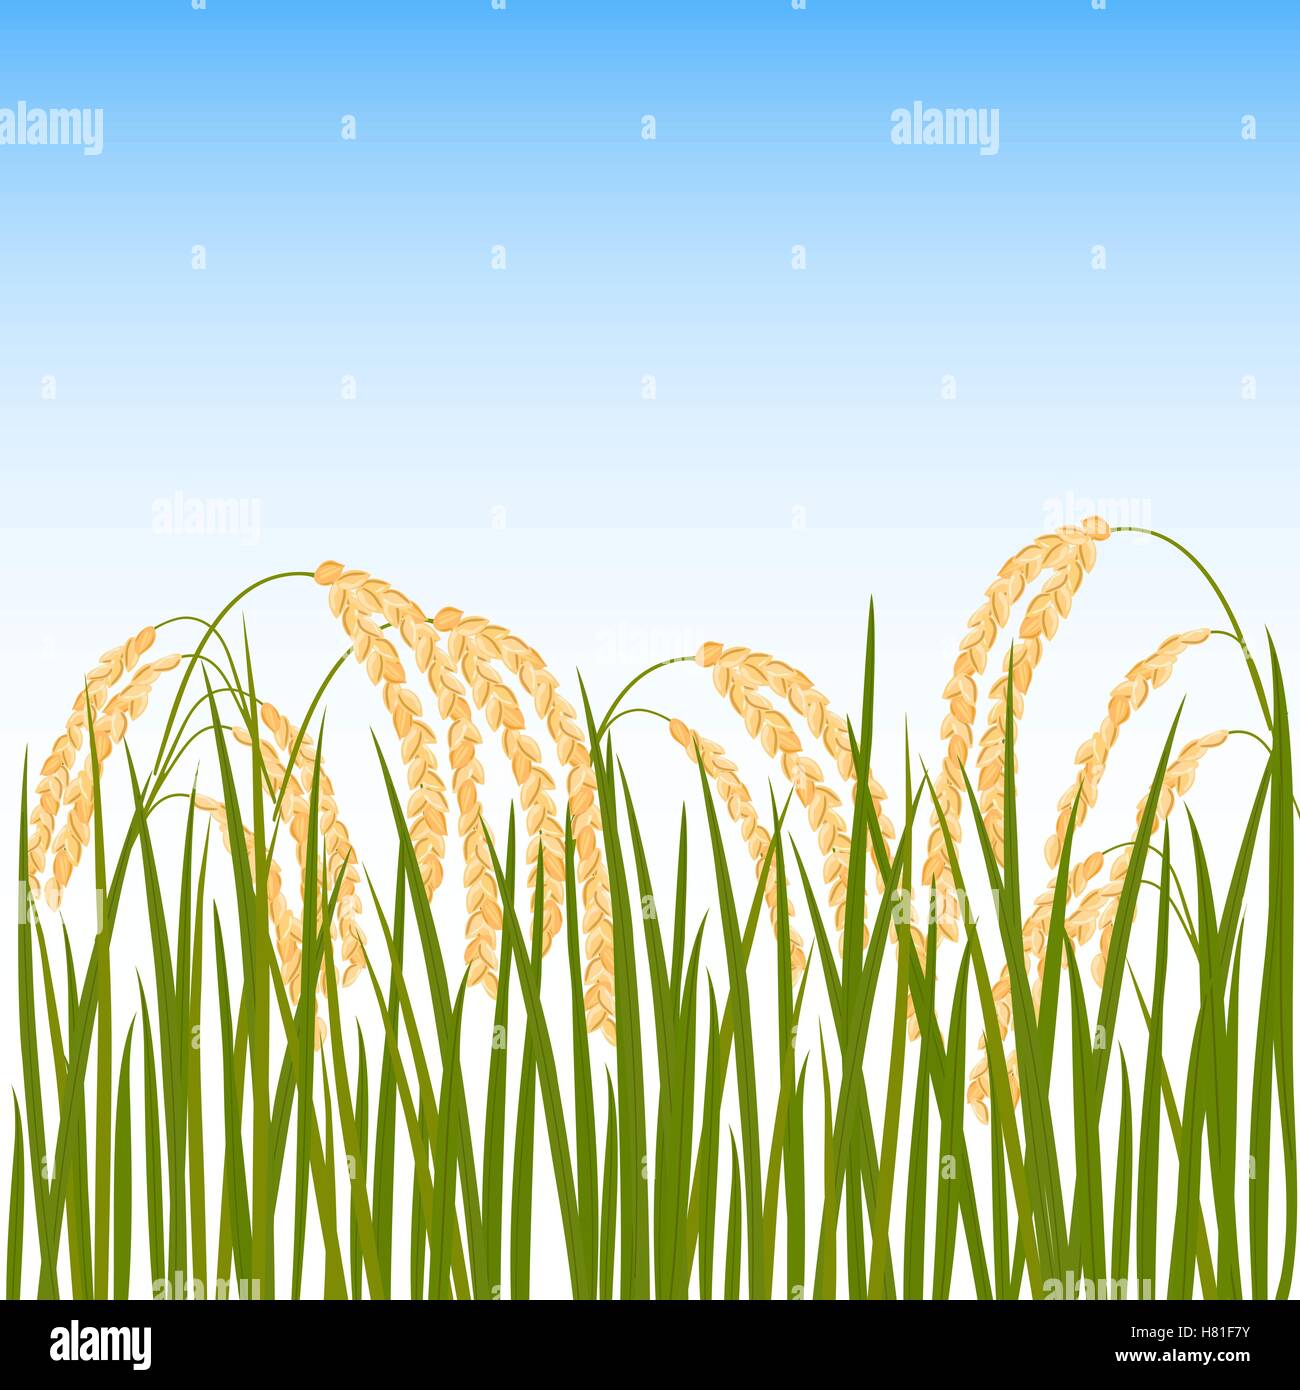 Bereich der Reis. Gelbe Ähren Reis und blauer Himmel im Hintergrund. Vektor-Illustration. EPS-10. Stock Vektor